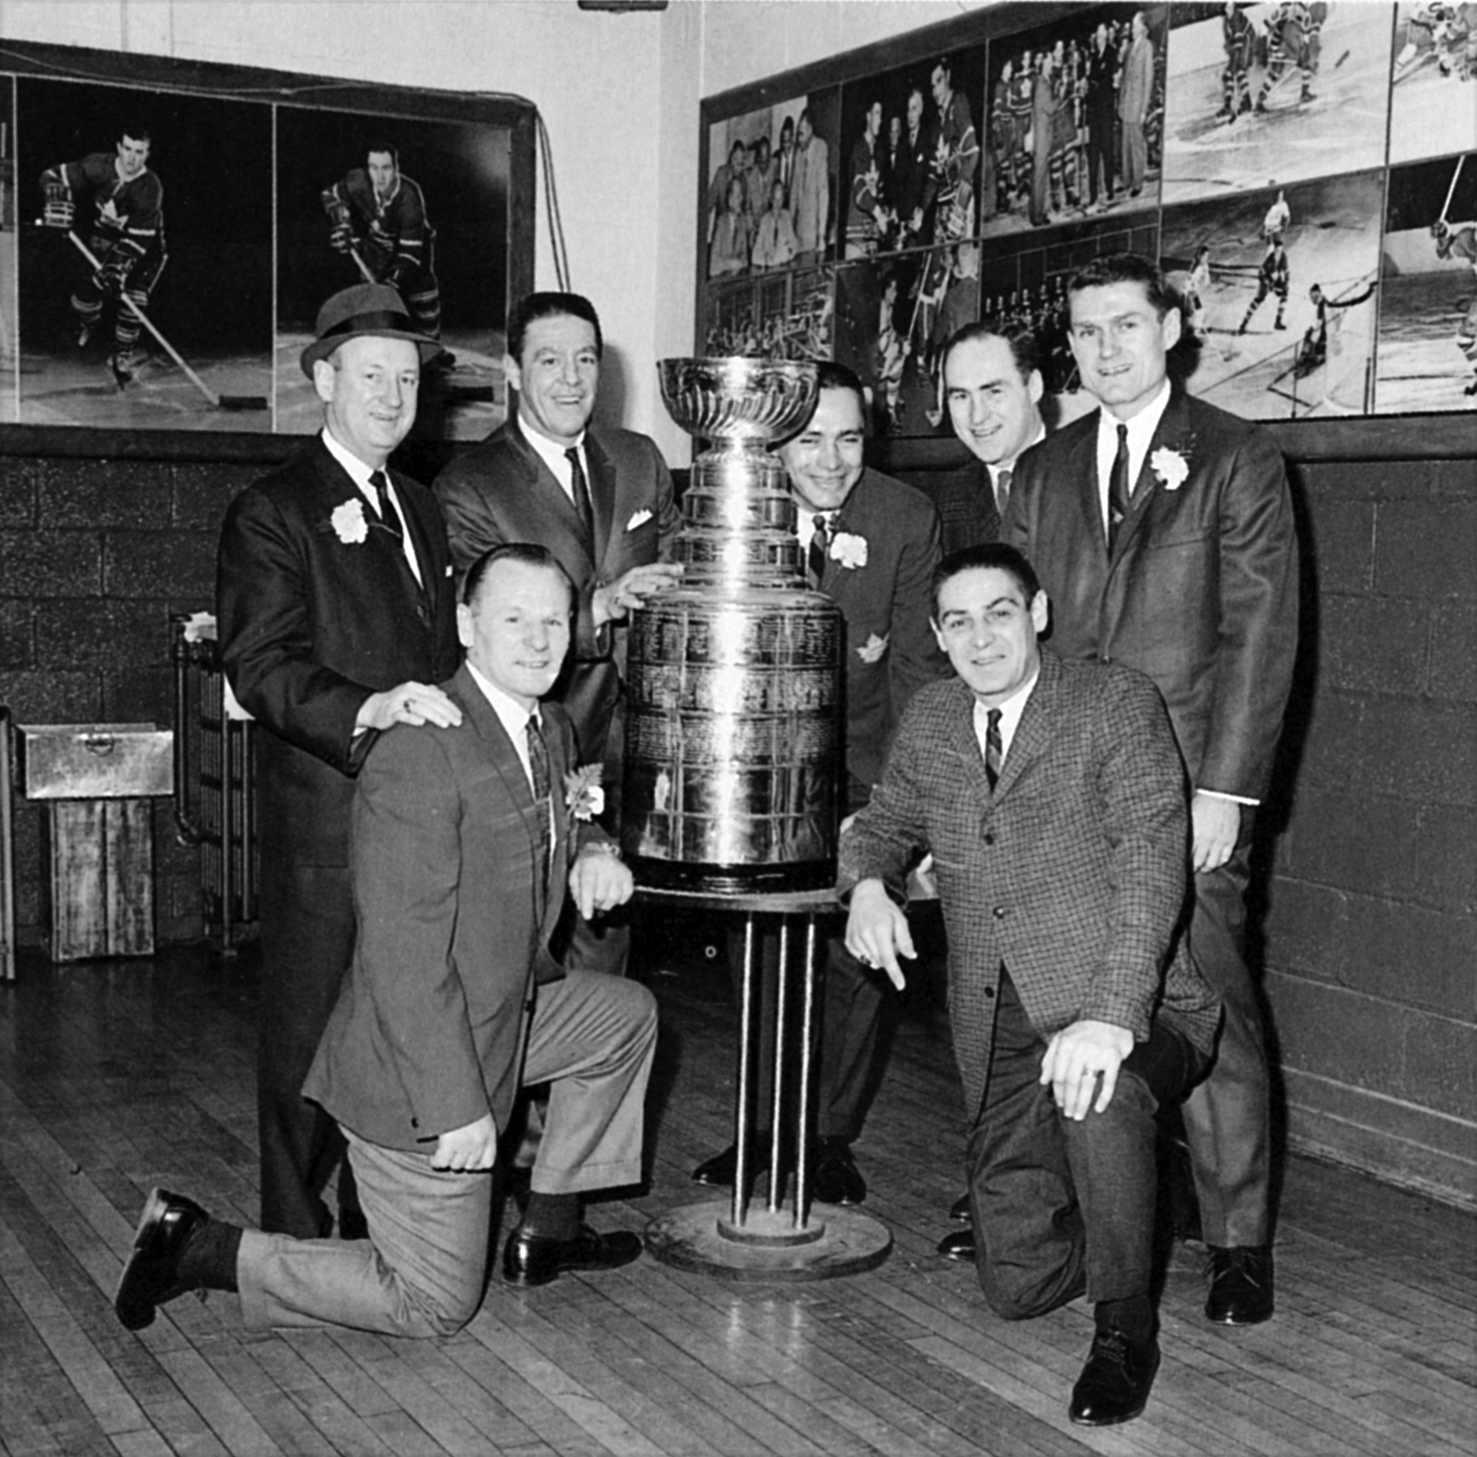 Dave Stubbs 🇨🇦 on X: Toronto @MapleLeafs won the 1967 Stanley